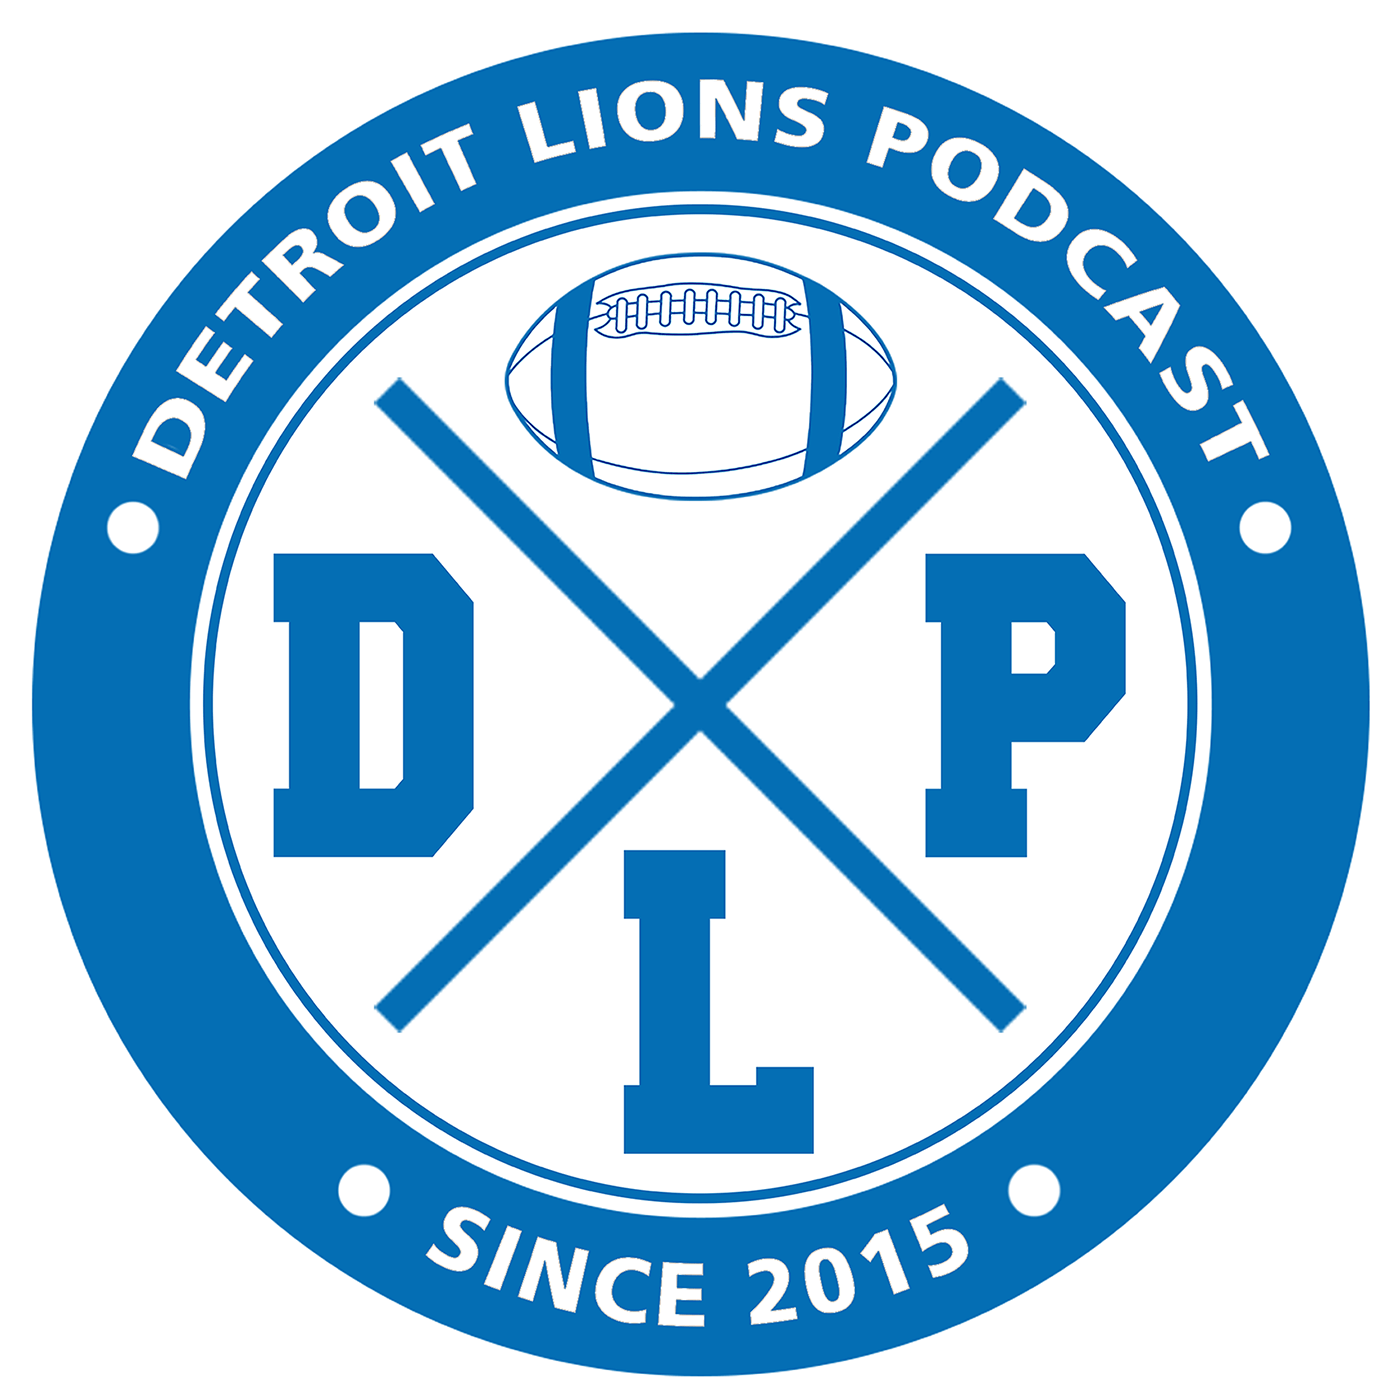 Detroit Lions Minicamp Recap | Detroit Lions Podcast